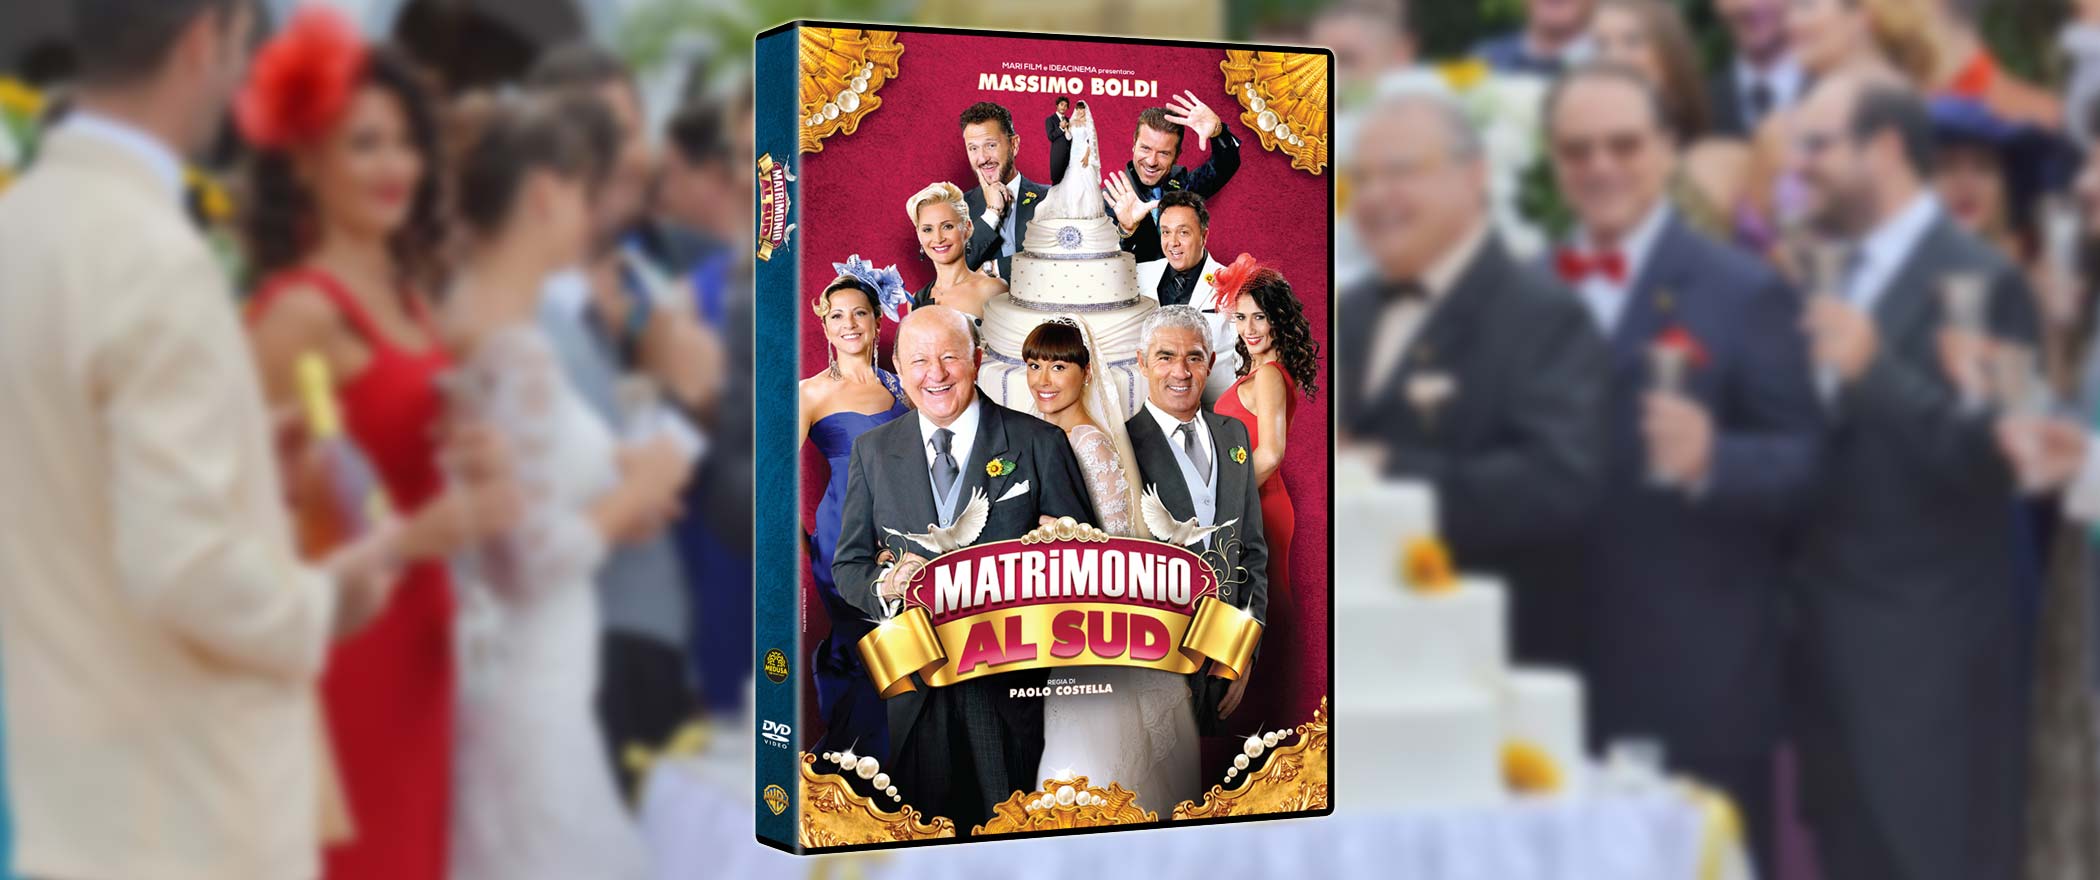 Matrimonio al sud in DVD